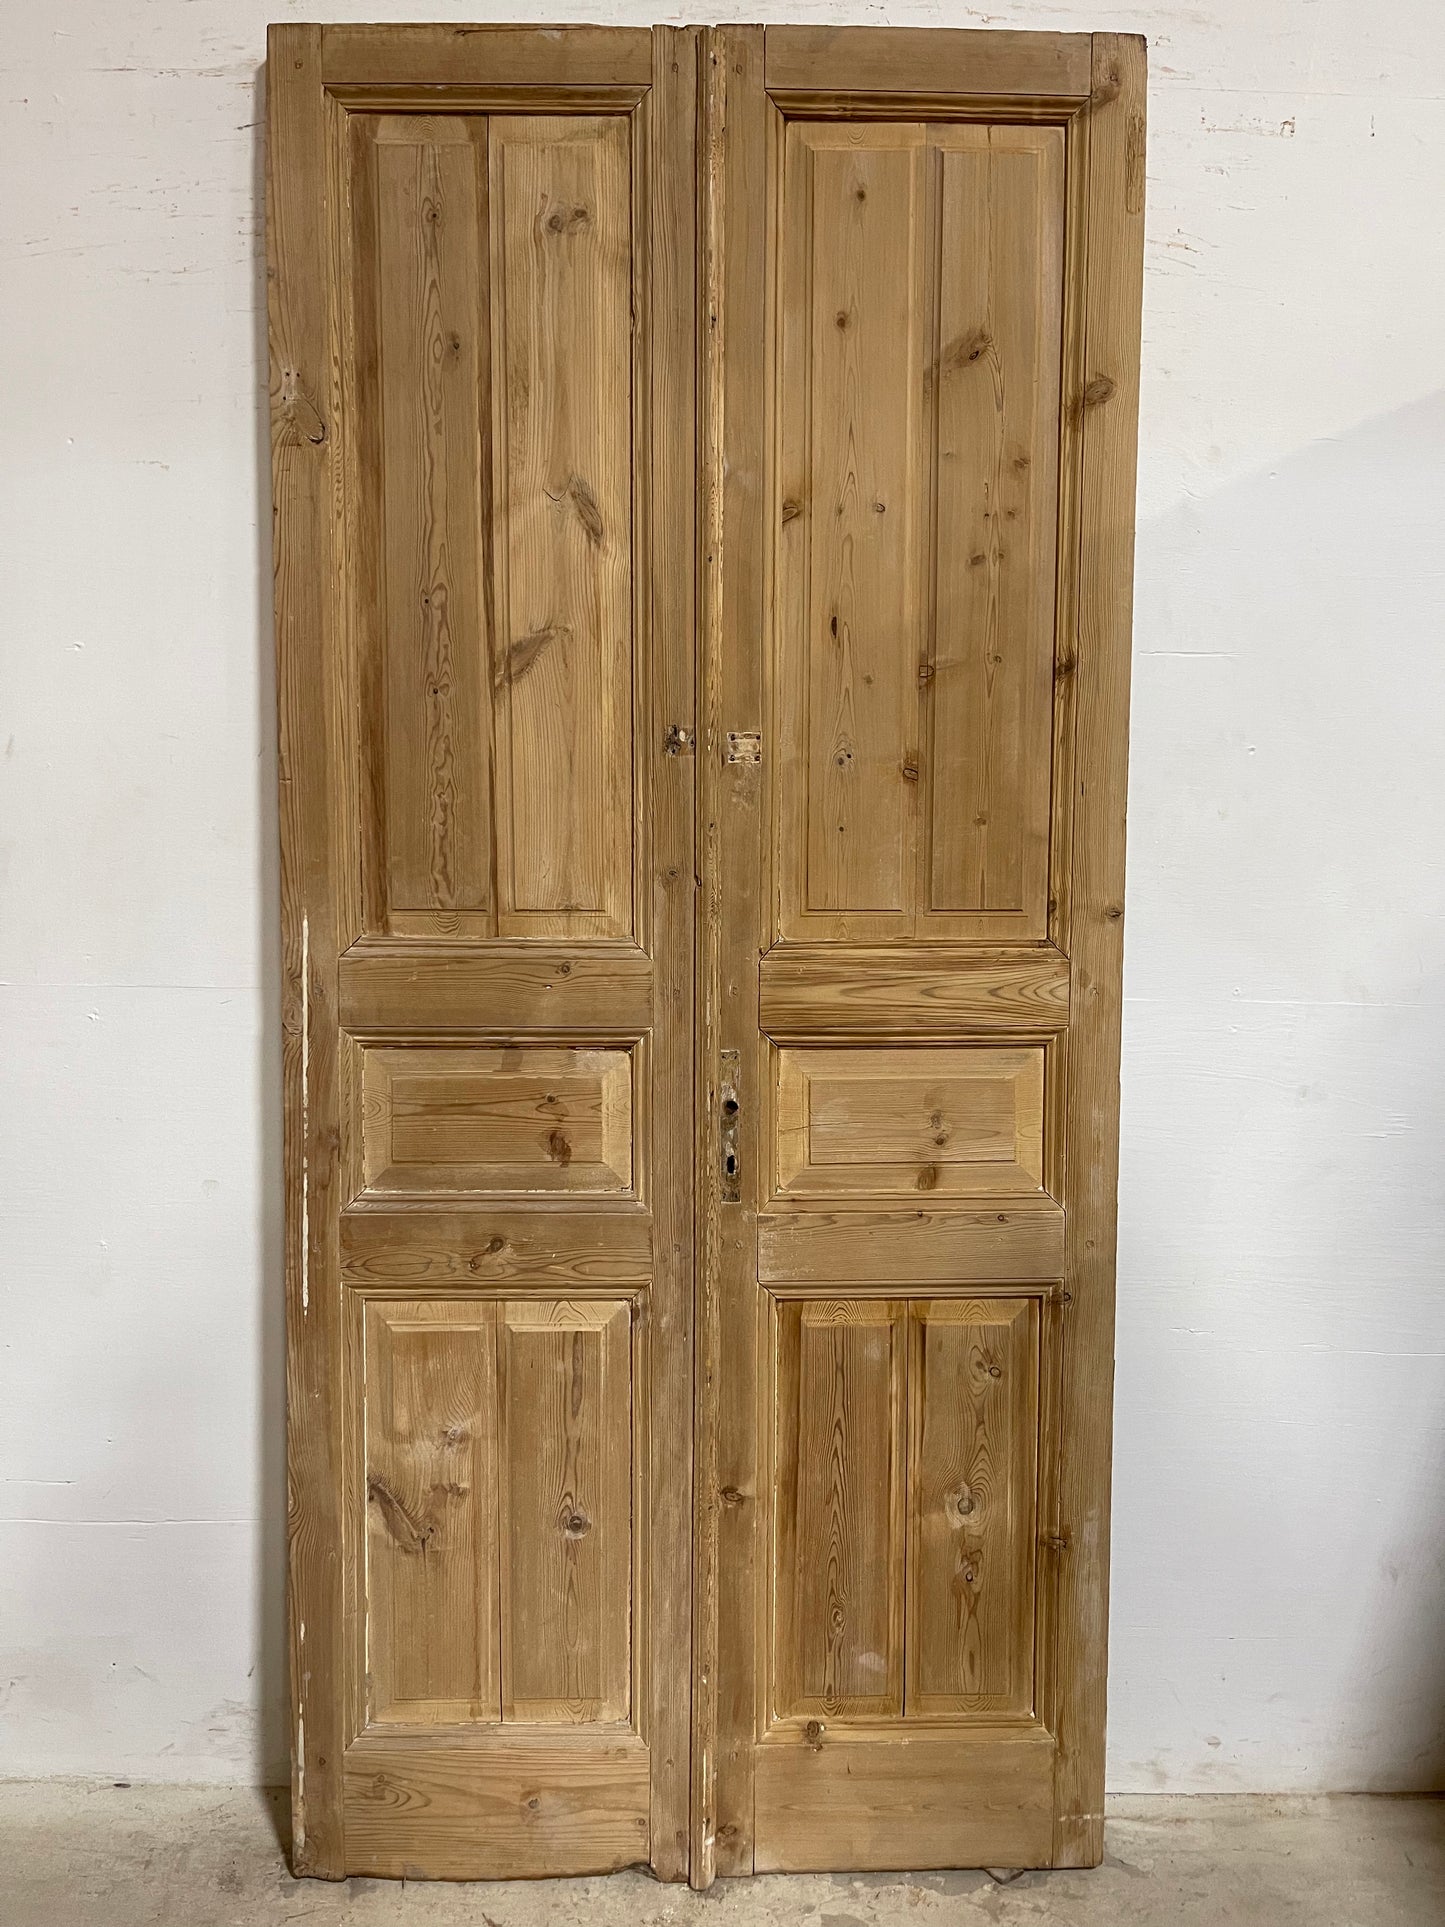 Antique French Panel Doors (97.5x44.5) J669